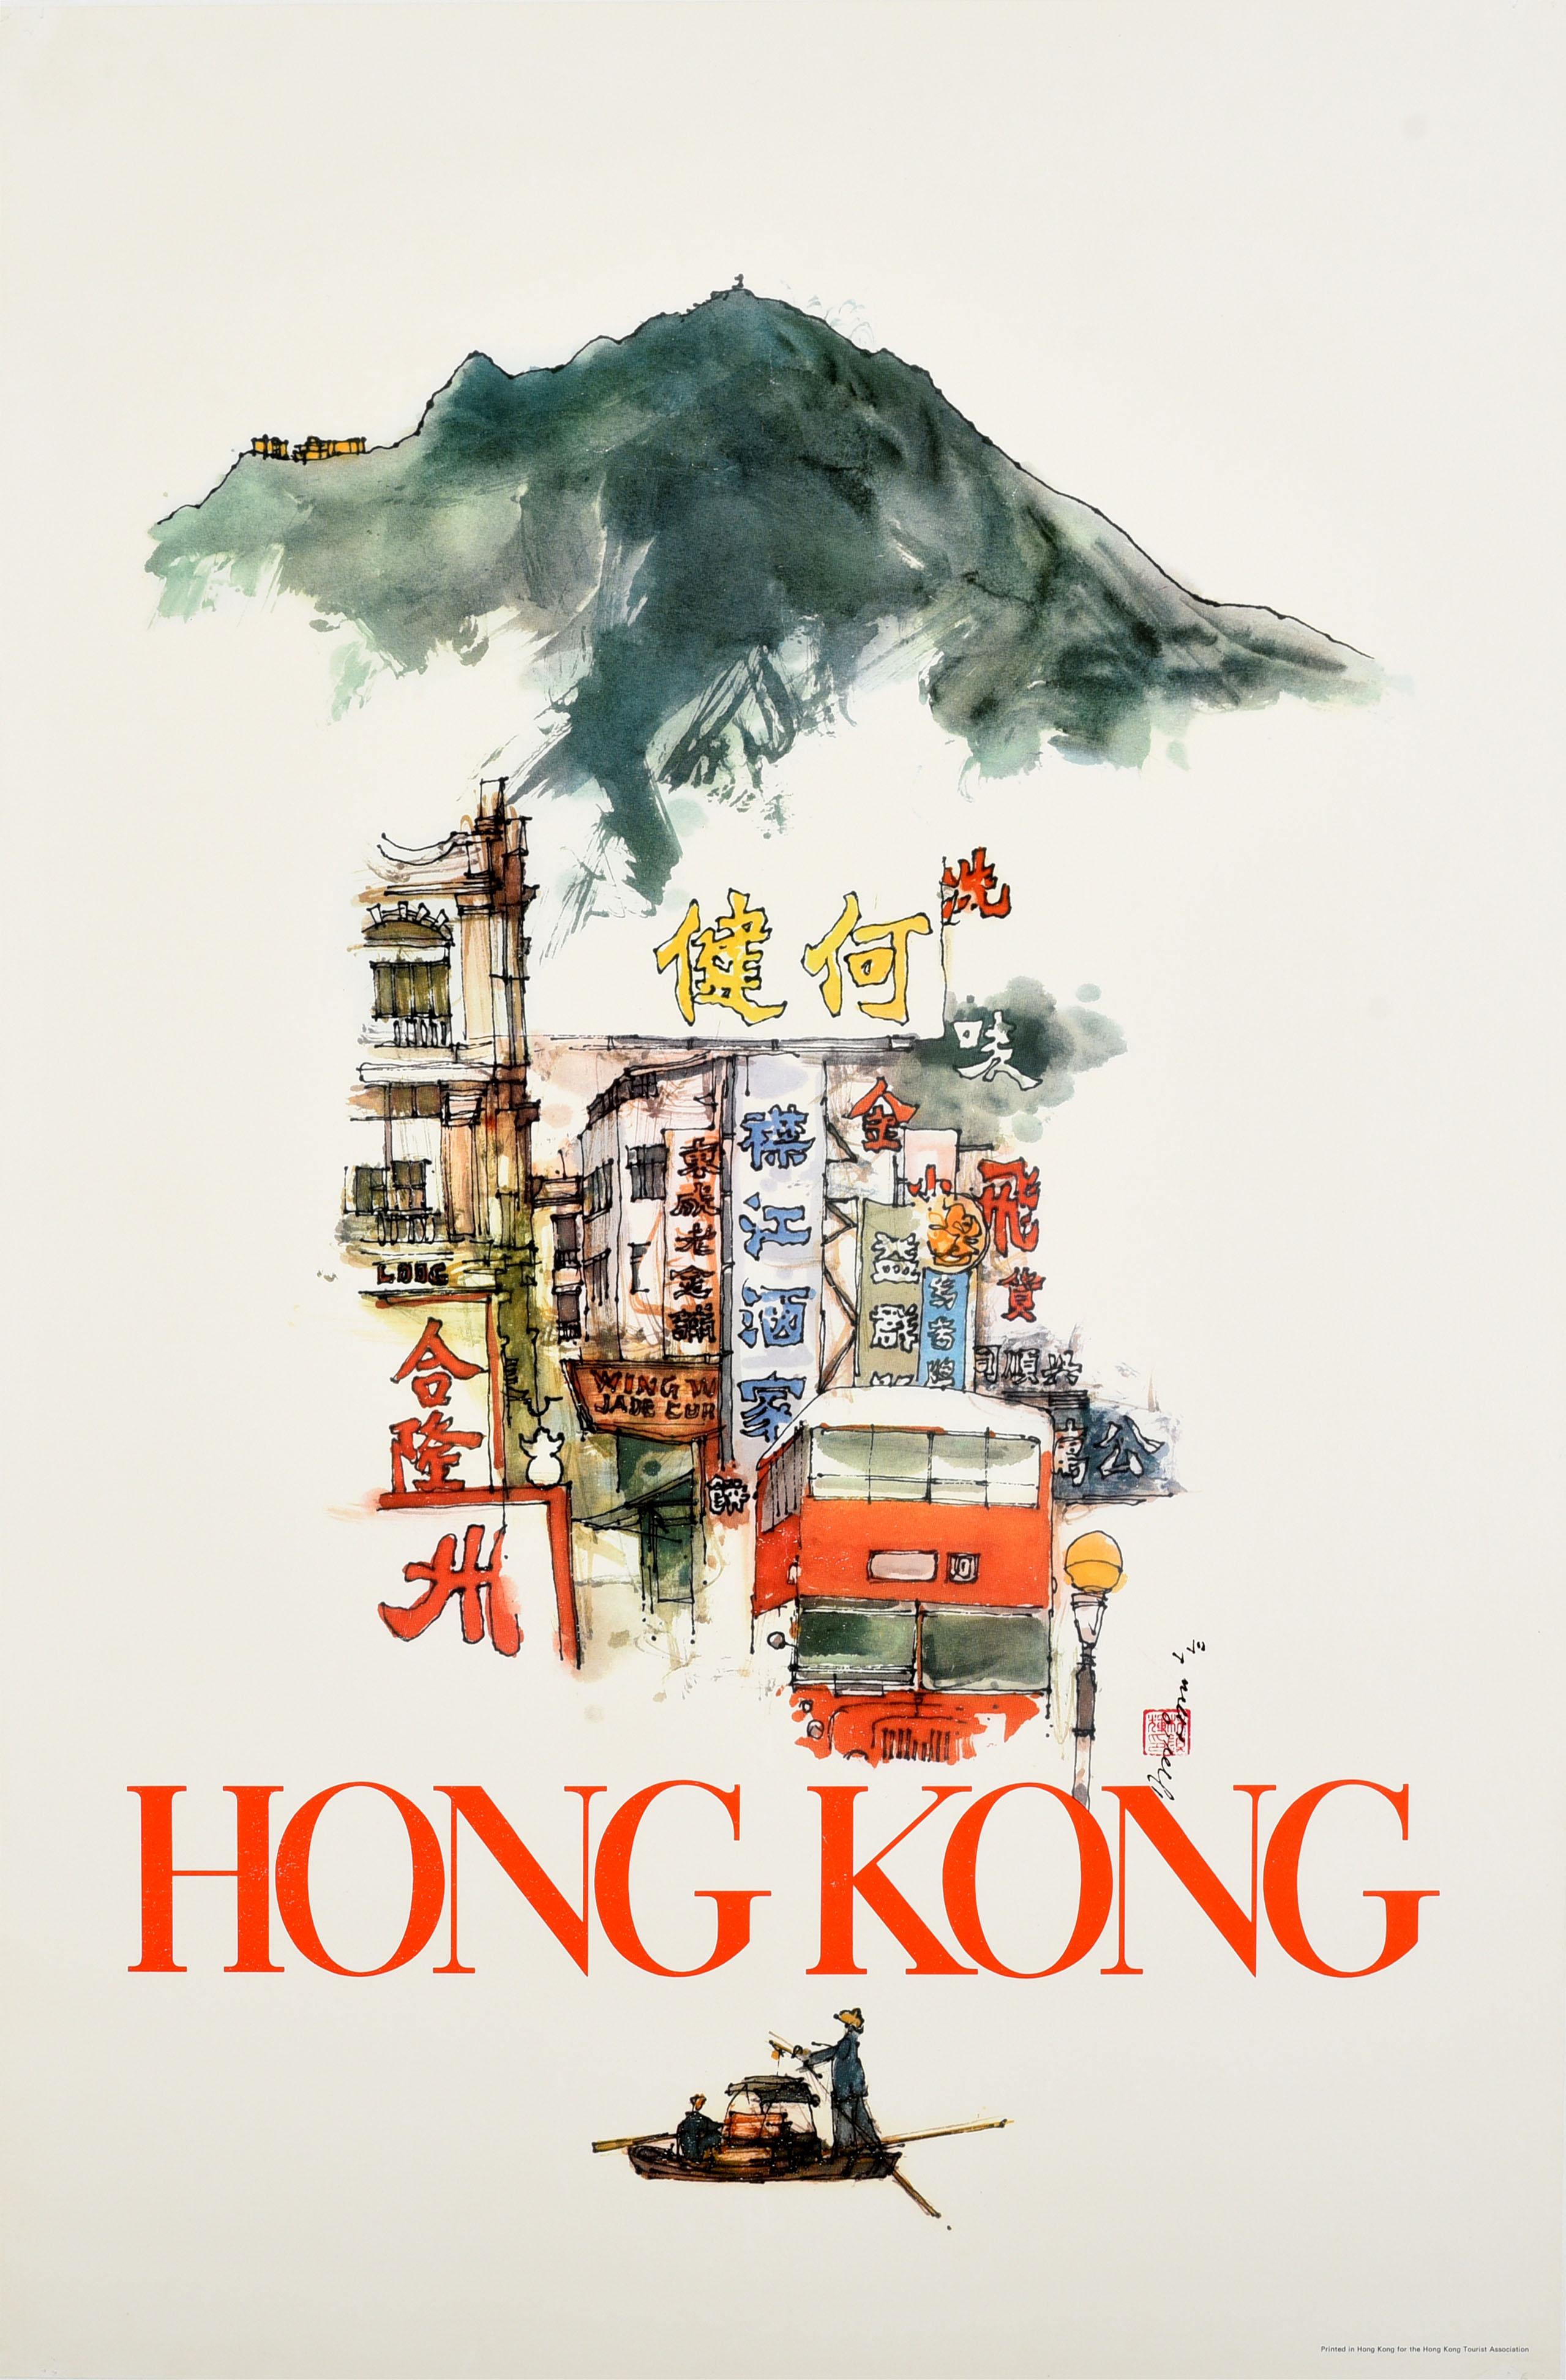 David Lam Chun-fai Print - Original Vintage Travel Poster For Hong Kong Victoria Peak Sampan Boat Asia Art